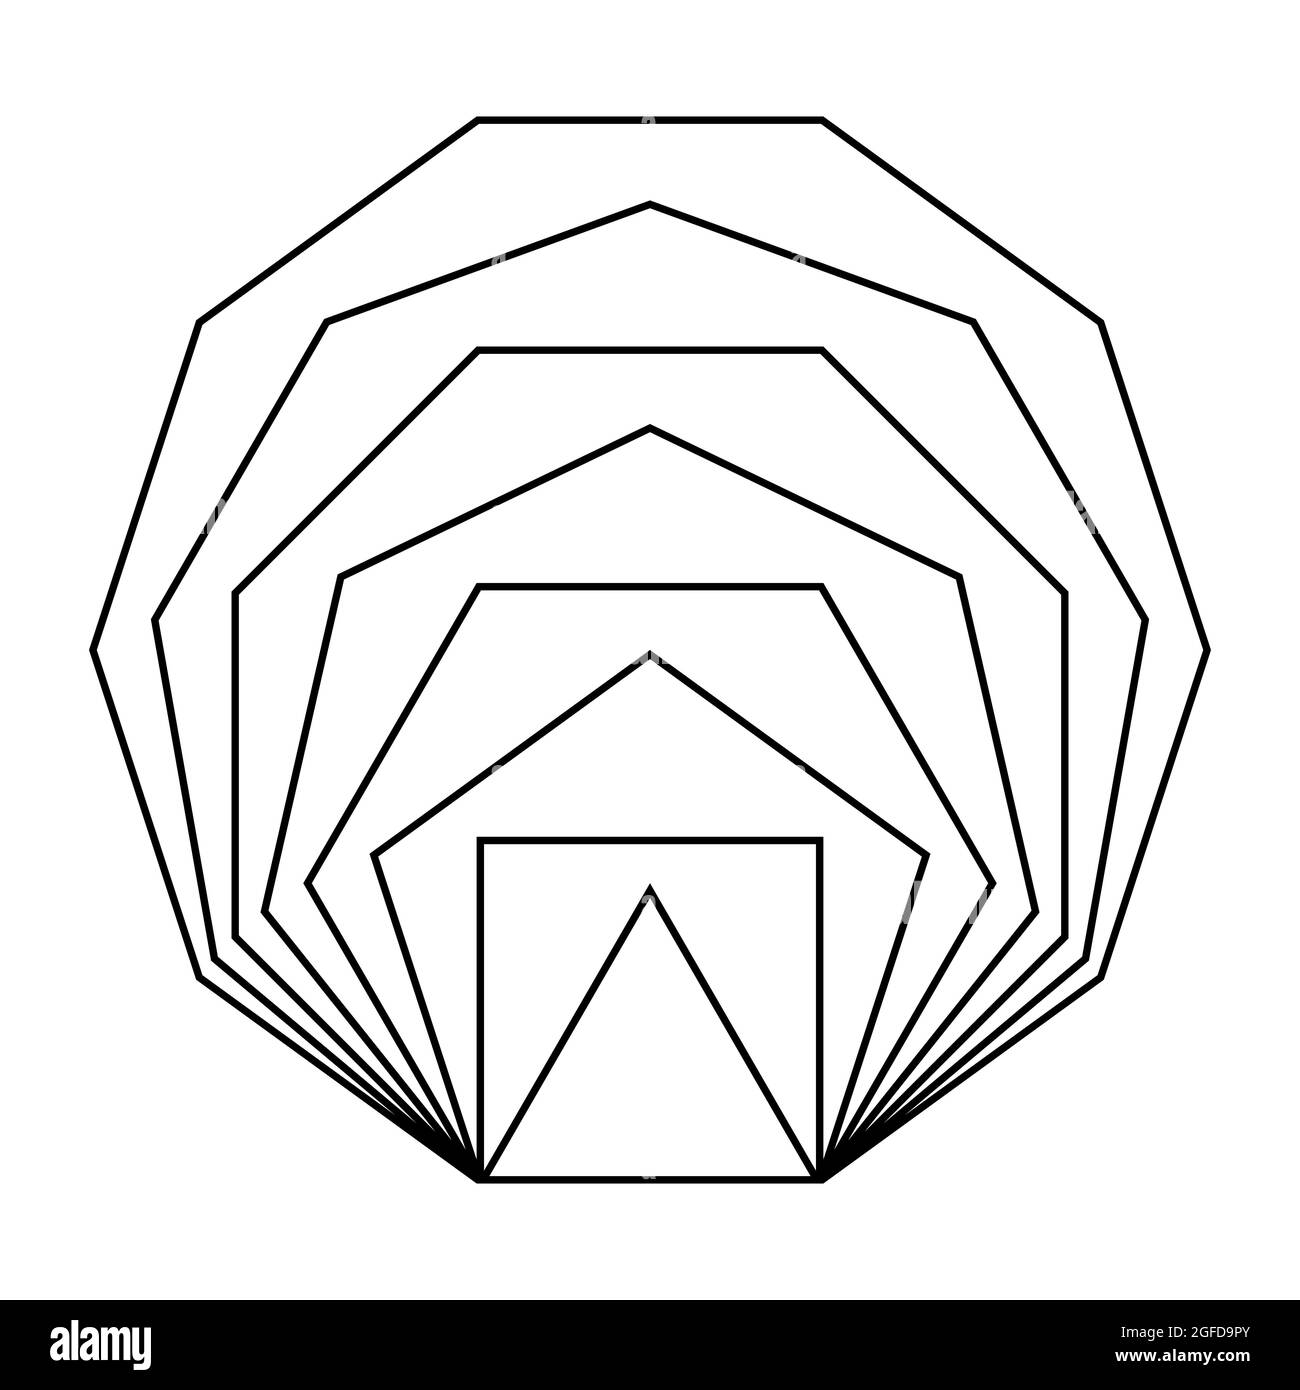 Polygones réguliers, avec la même longueur de segment de ligne, en ligne. Polygones convexes, équiangulaires et équilatéraux, d'un triangle à un decagon. Banque D'Images